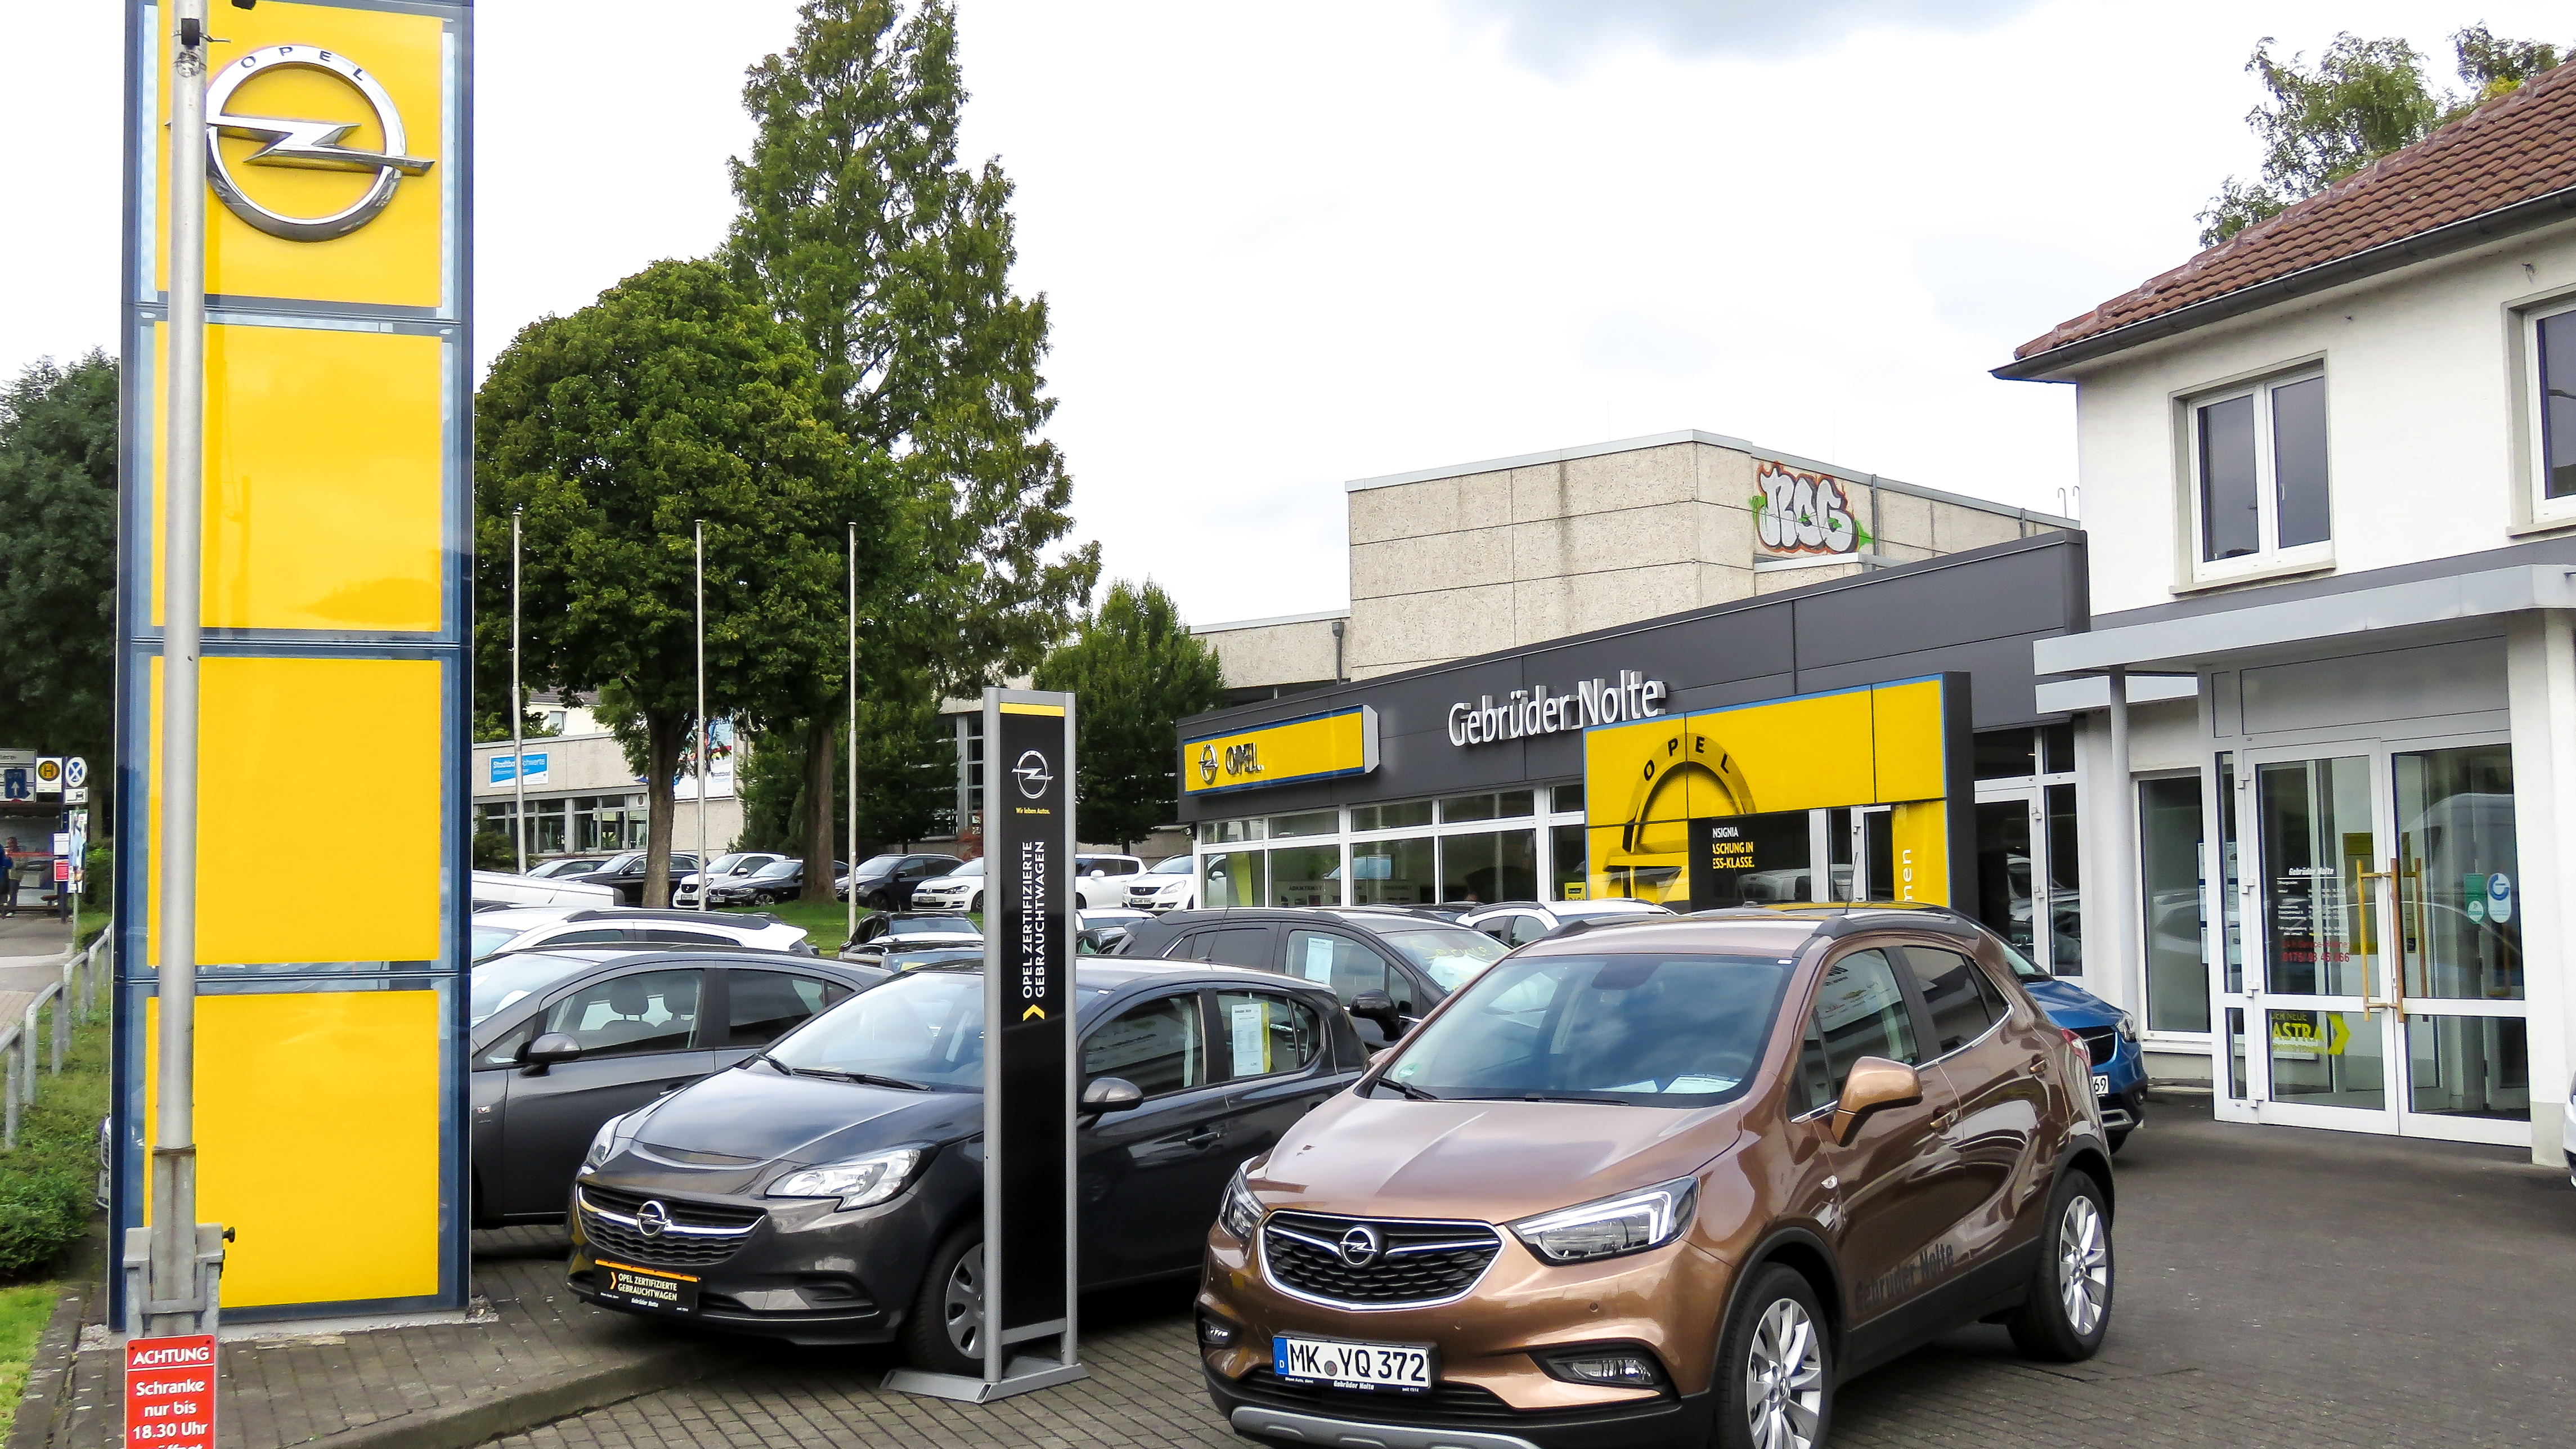 ➤ Nolte Gebrüder Opel Automobile 58239 Schwerte Öffnungszeiten | Adresse |  Telefon